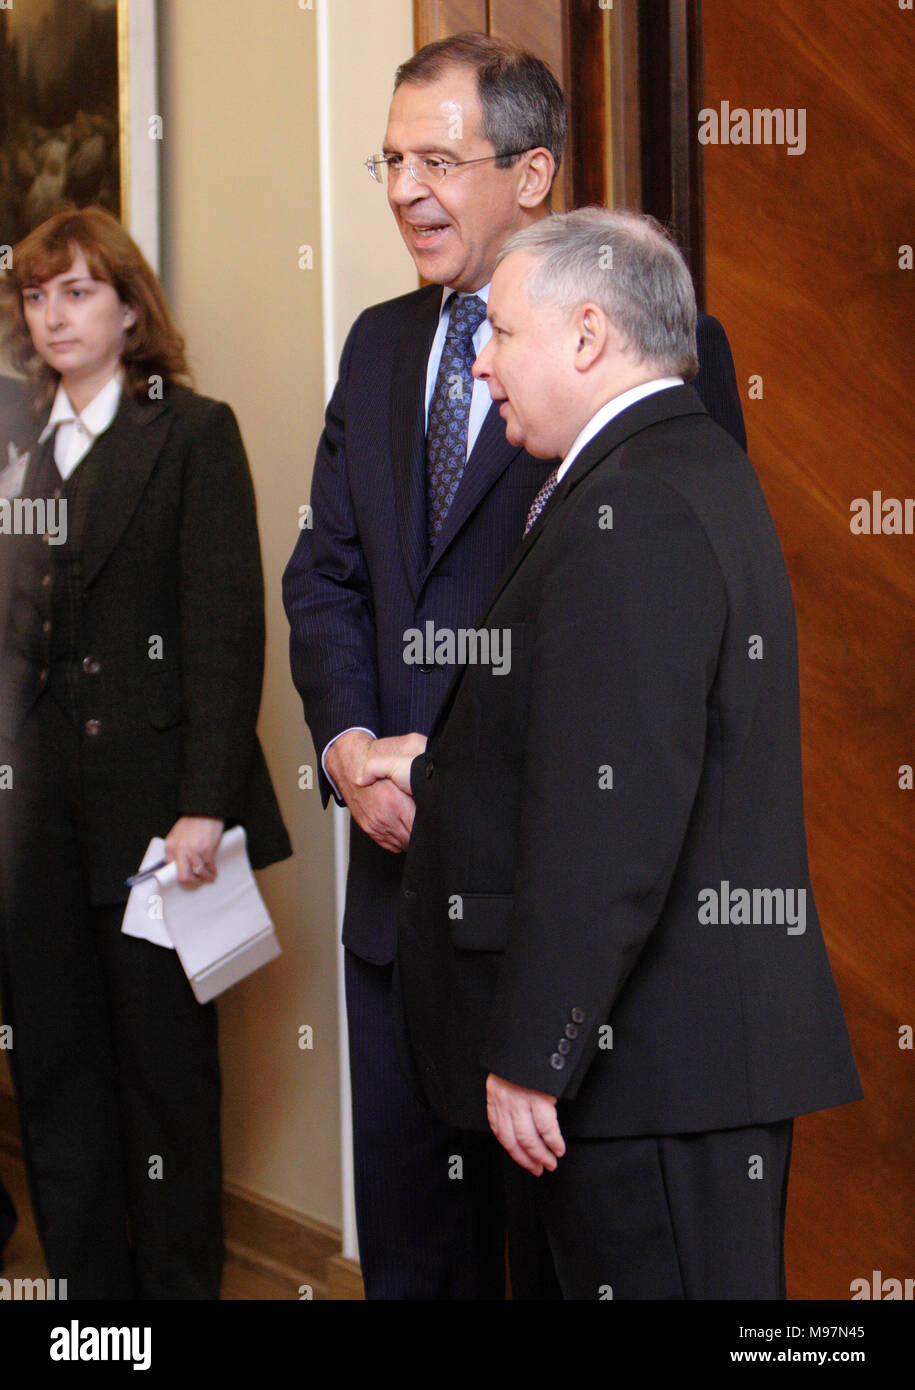 Varsavia, Masovia / Polonia - 2006/10/05: Sergey Lavrov - Ministro degli Affari Esteri della Federazione russa con Jaroslaw Kaczynski - Primo Ministro Ministe Foto Stock